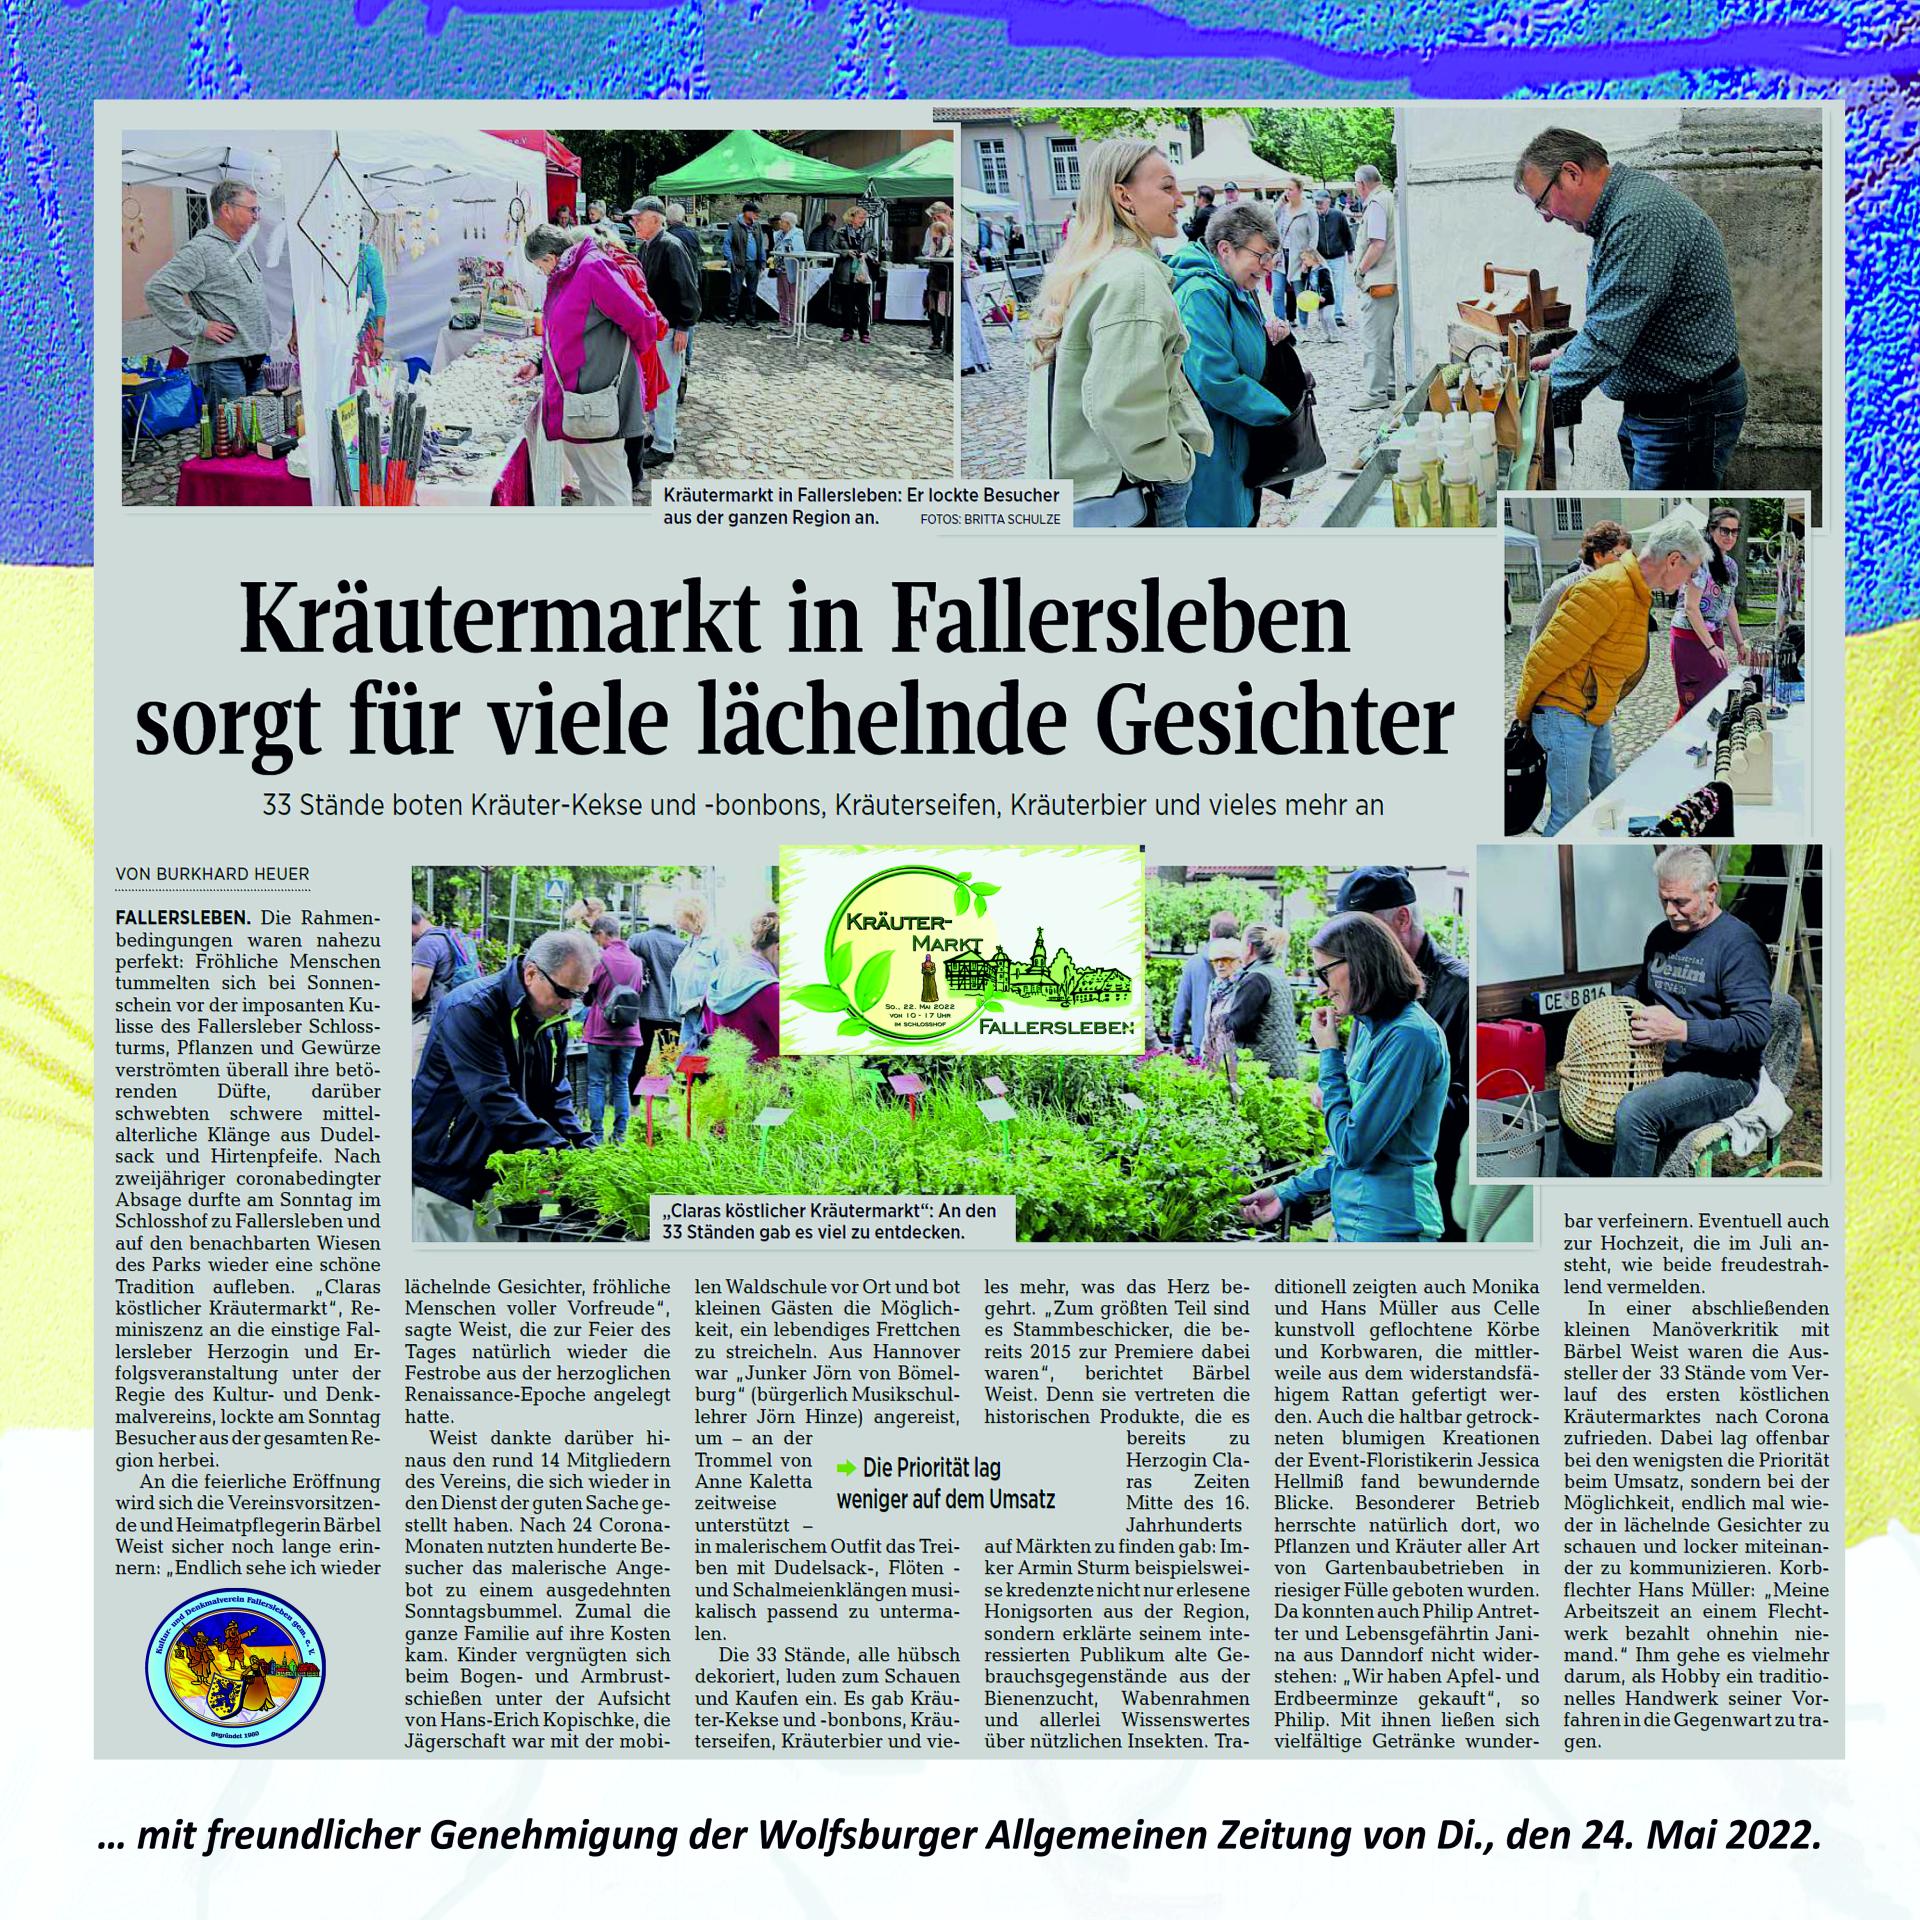 Bericht aus der Wolfsburger Allgemeinen Zeitung zum Fallersleber Kräutermarkt